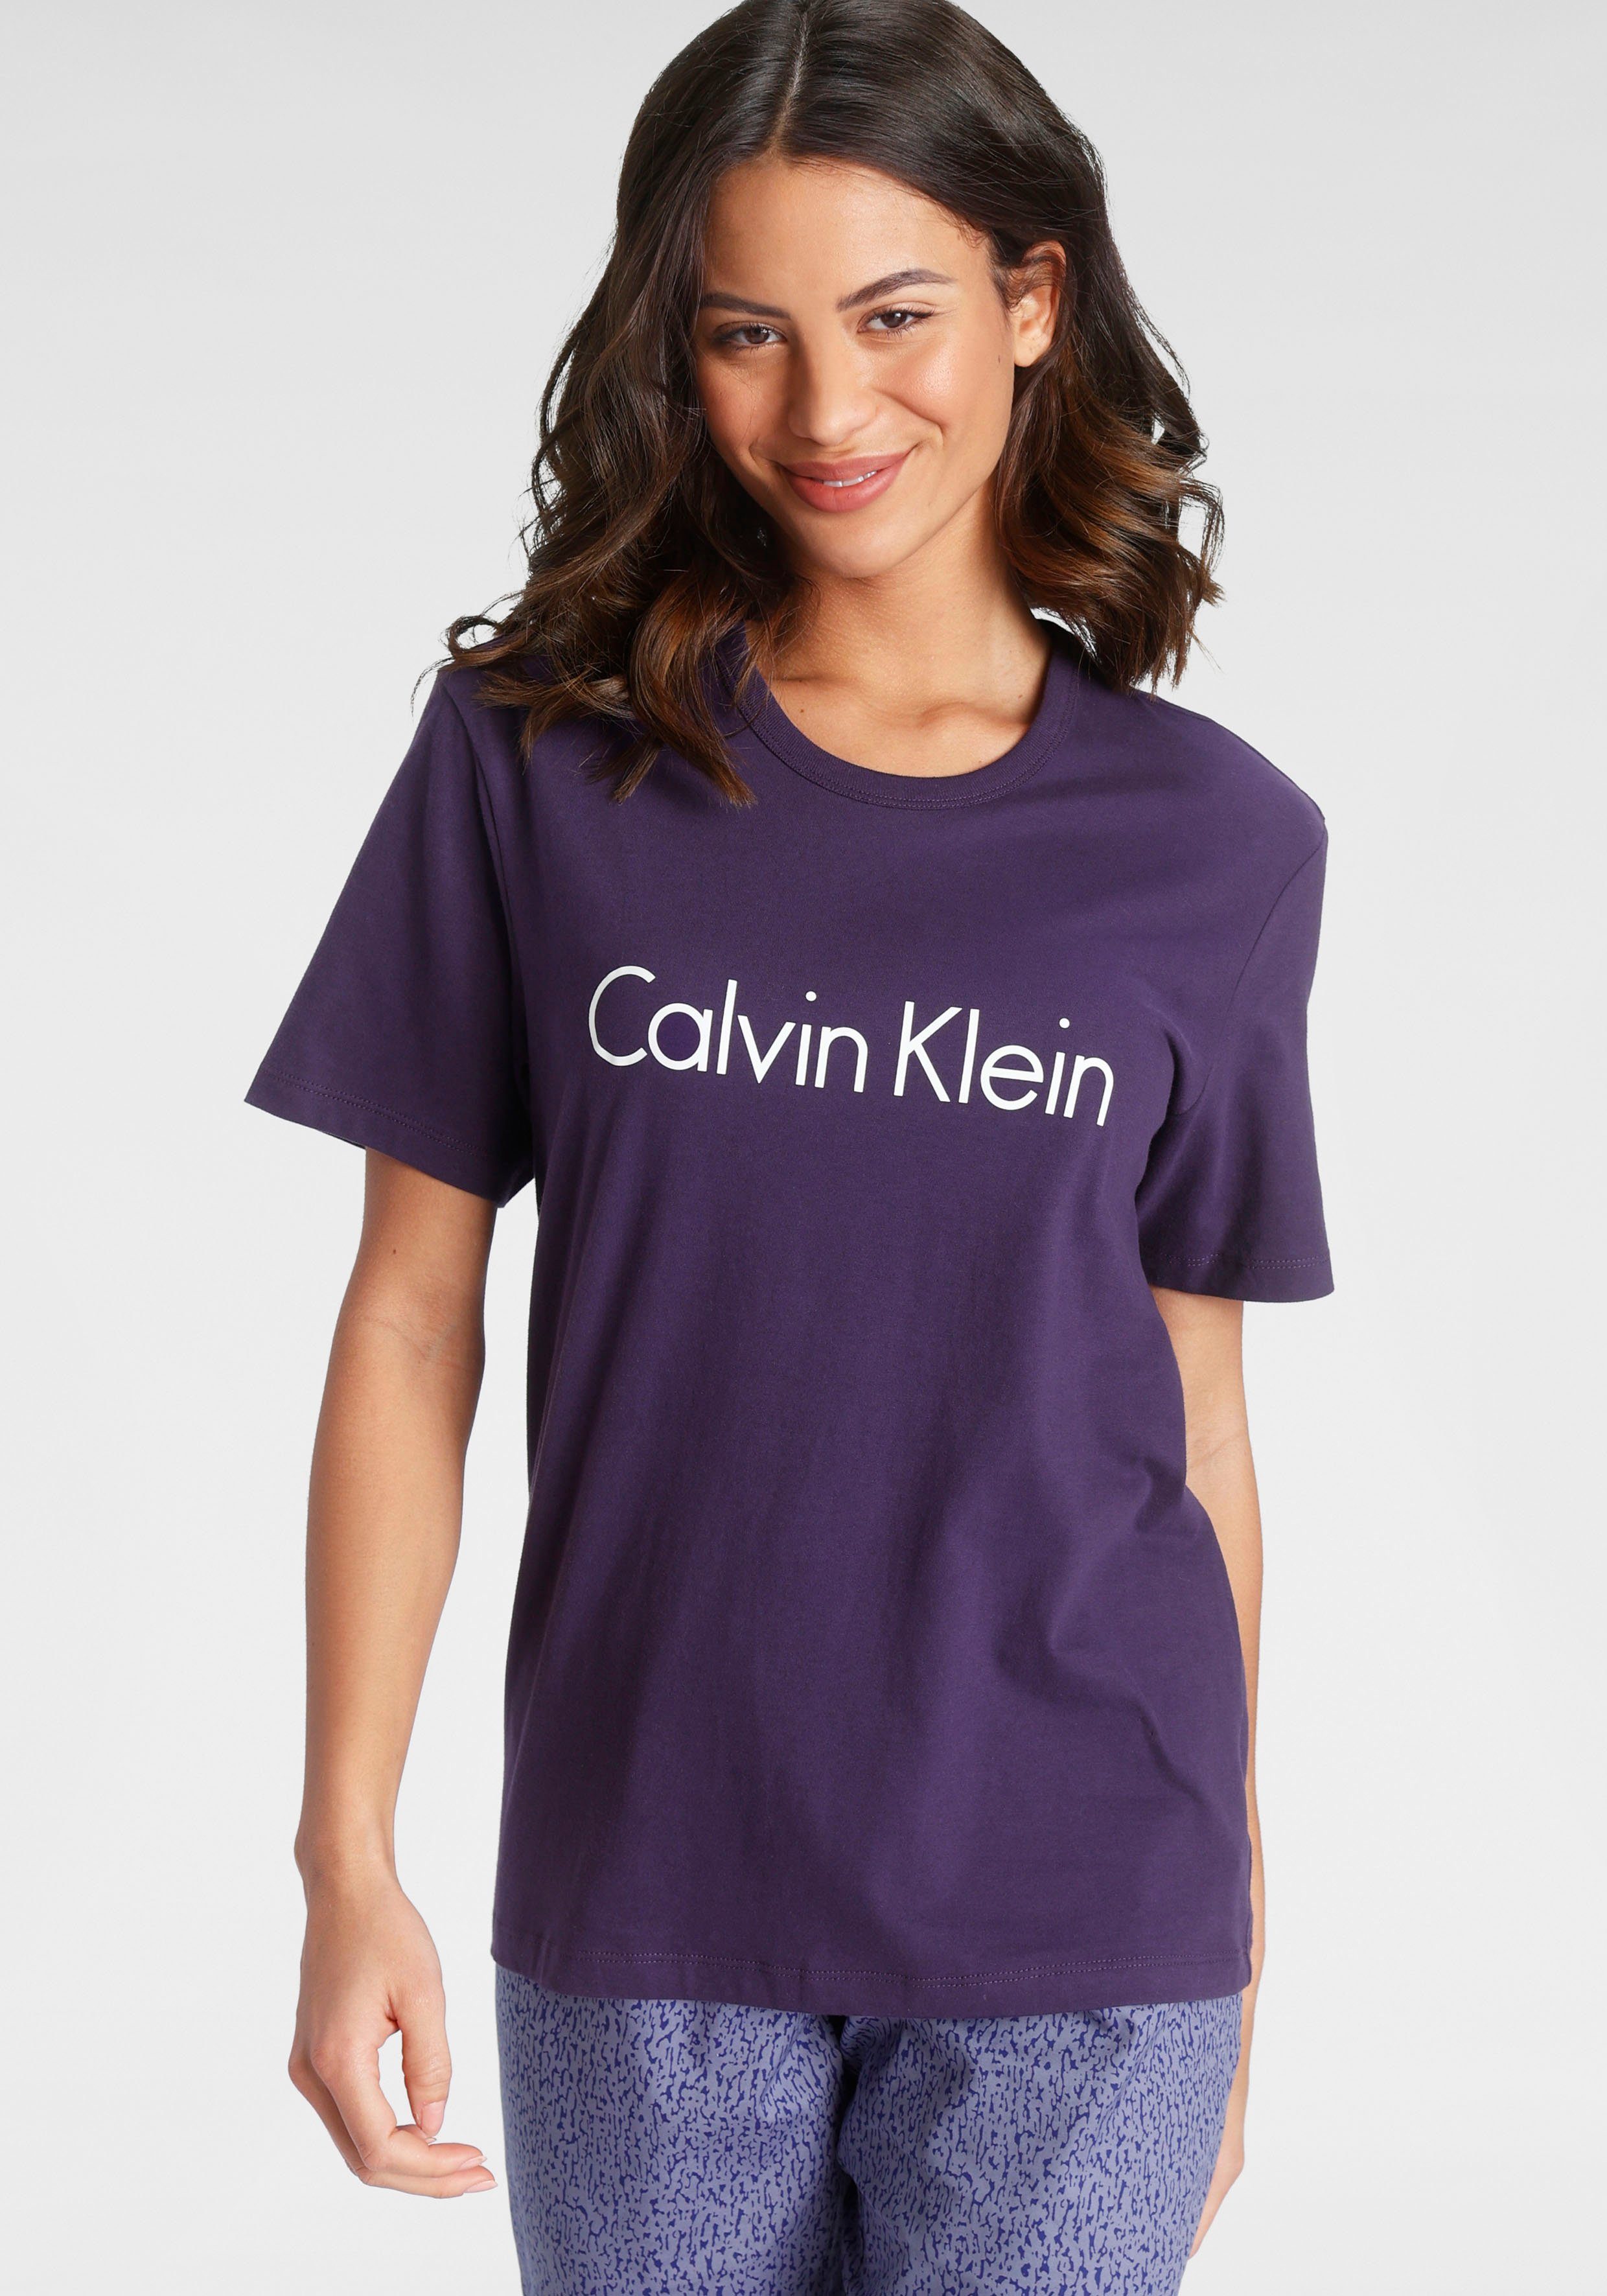 Calvin Klein Damen T-Shirts online kaufen | OTTO